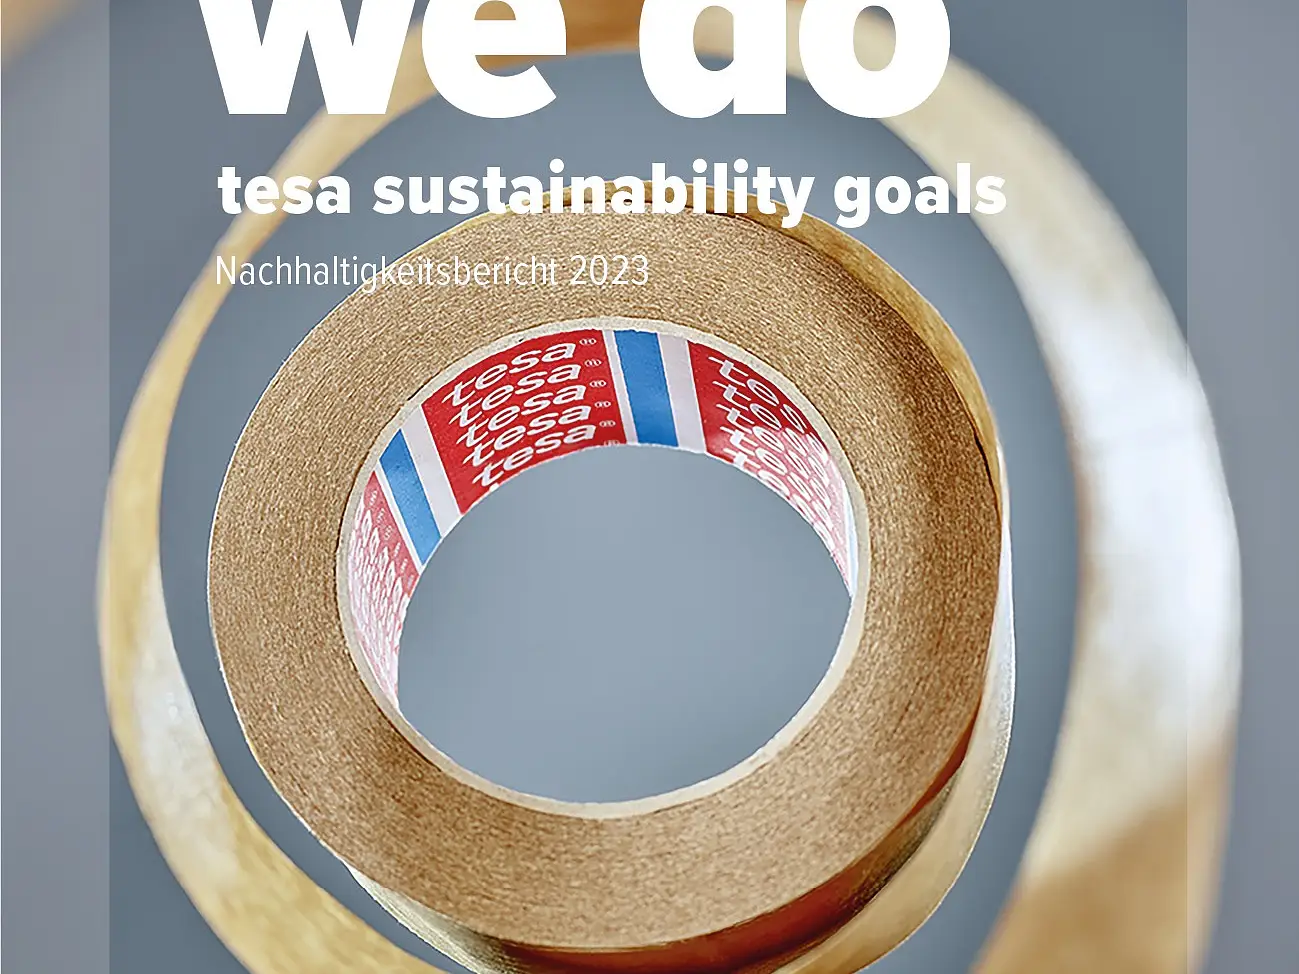 tesa legt die strategische Priorität auf Nachhaltigkeit offen: Der Nachhaltigkeitsbericht 2023 gibt Einblicke in die Fortschritte